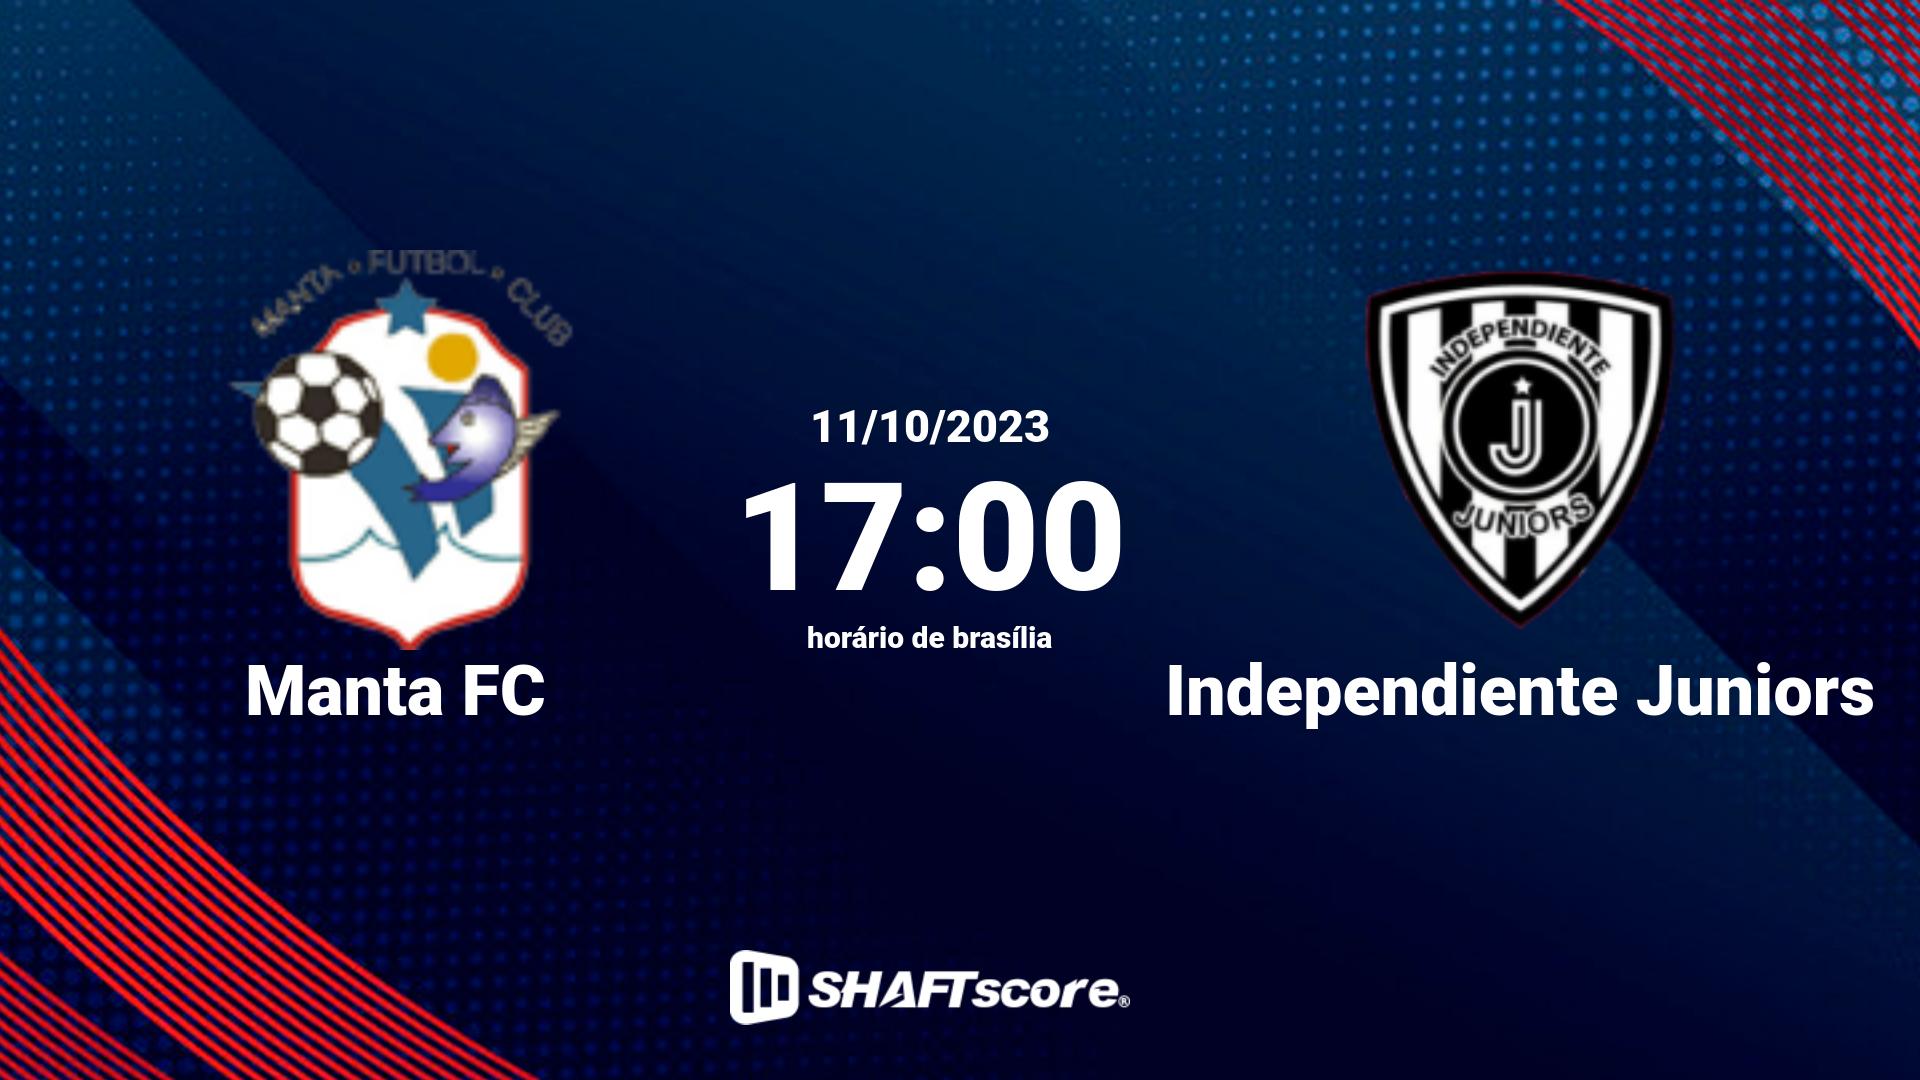 Estatísticas do jogo Manta FC vs Independiente Juniors 11.10 17:00